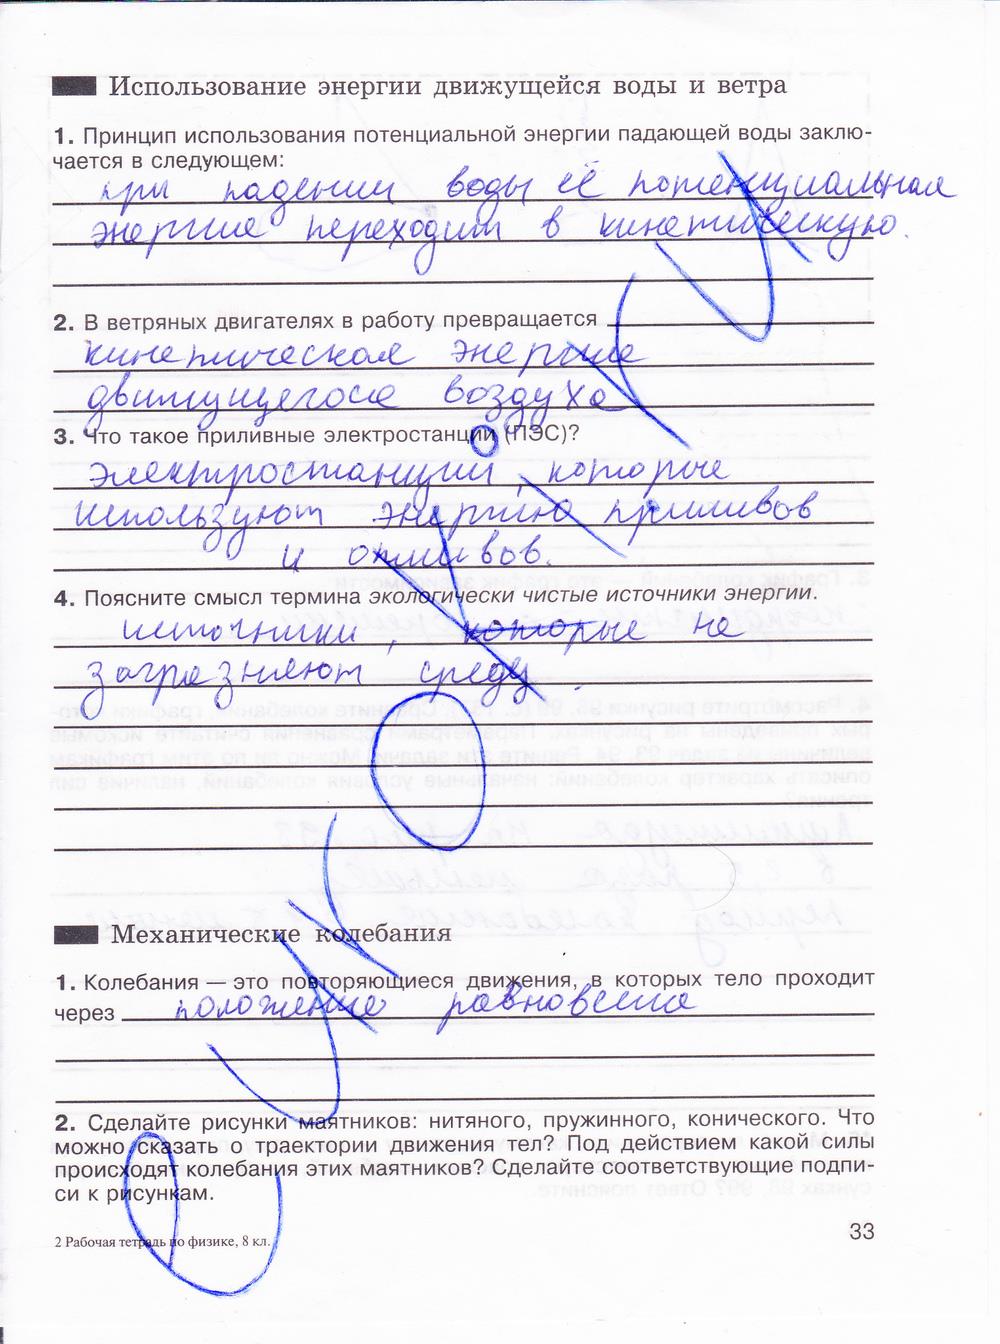 гдз 8 класс рабочая тетрадь страница 33 физика Мартынова, Иванова, Воронина